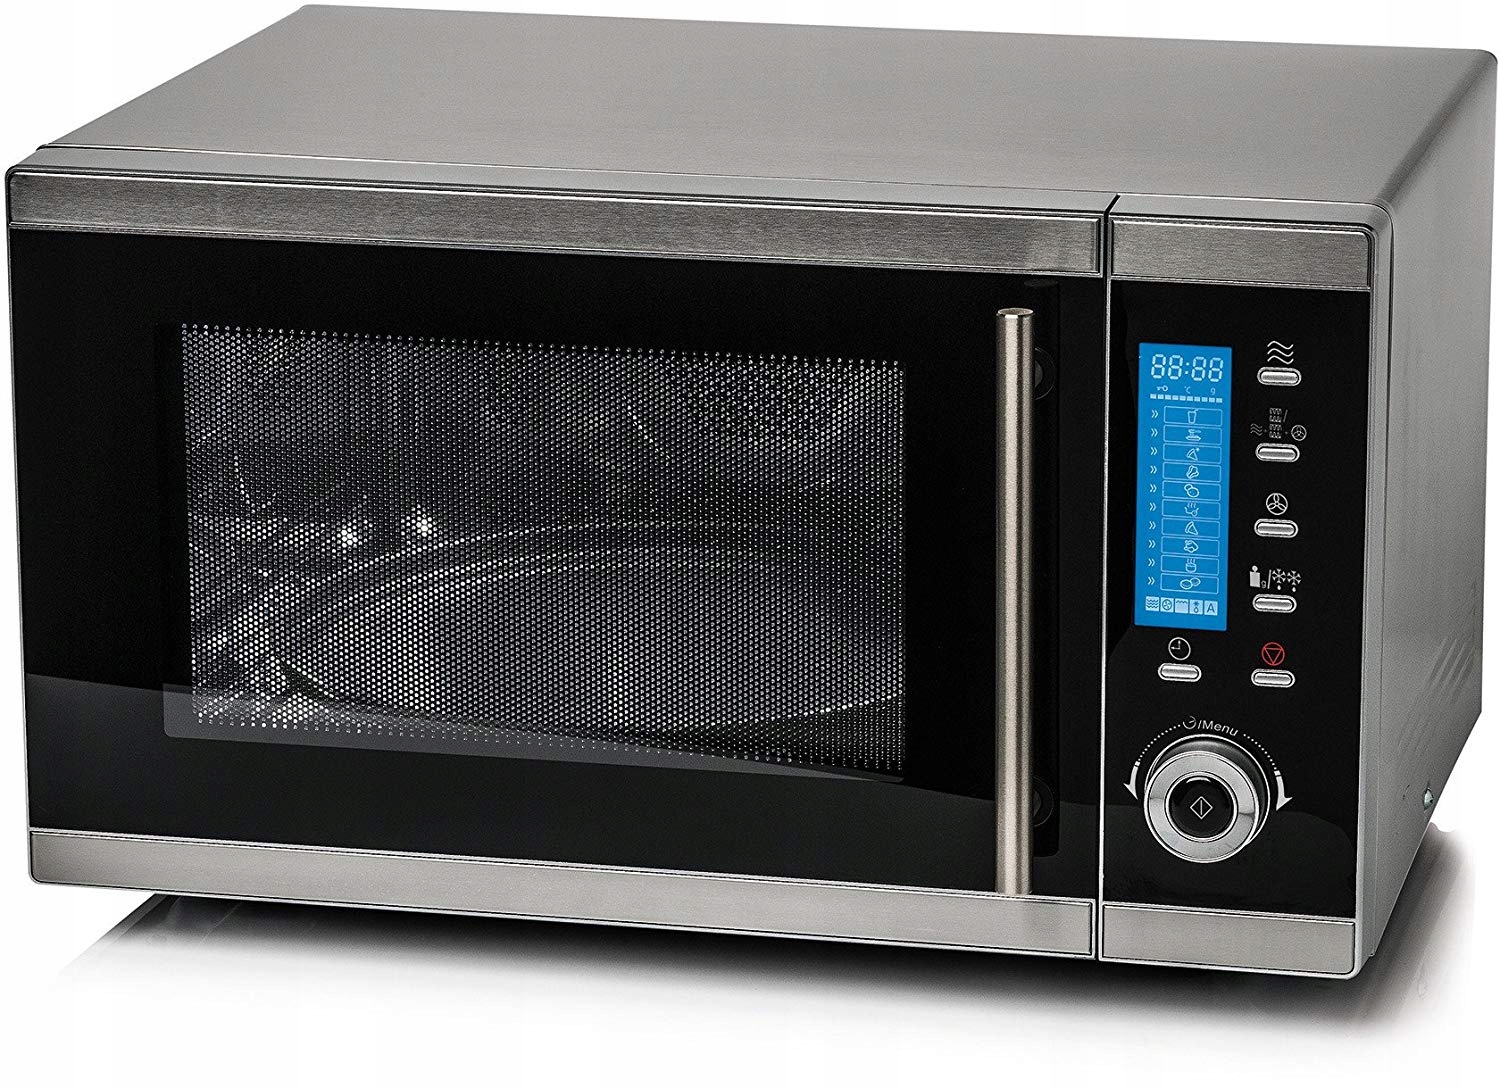 Свч печи бытовые. Микроволновая печь Microwave Oven. Saro 900вт СВЧ микроволновка. Микроволновая печь Медион с грилем. Simfer микроволновая печь.